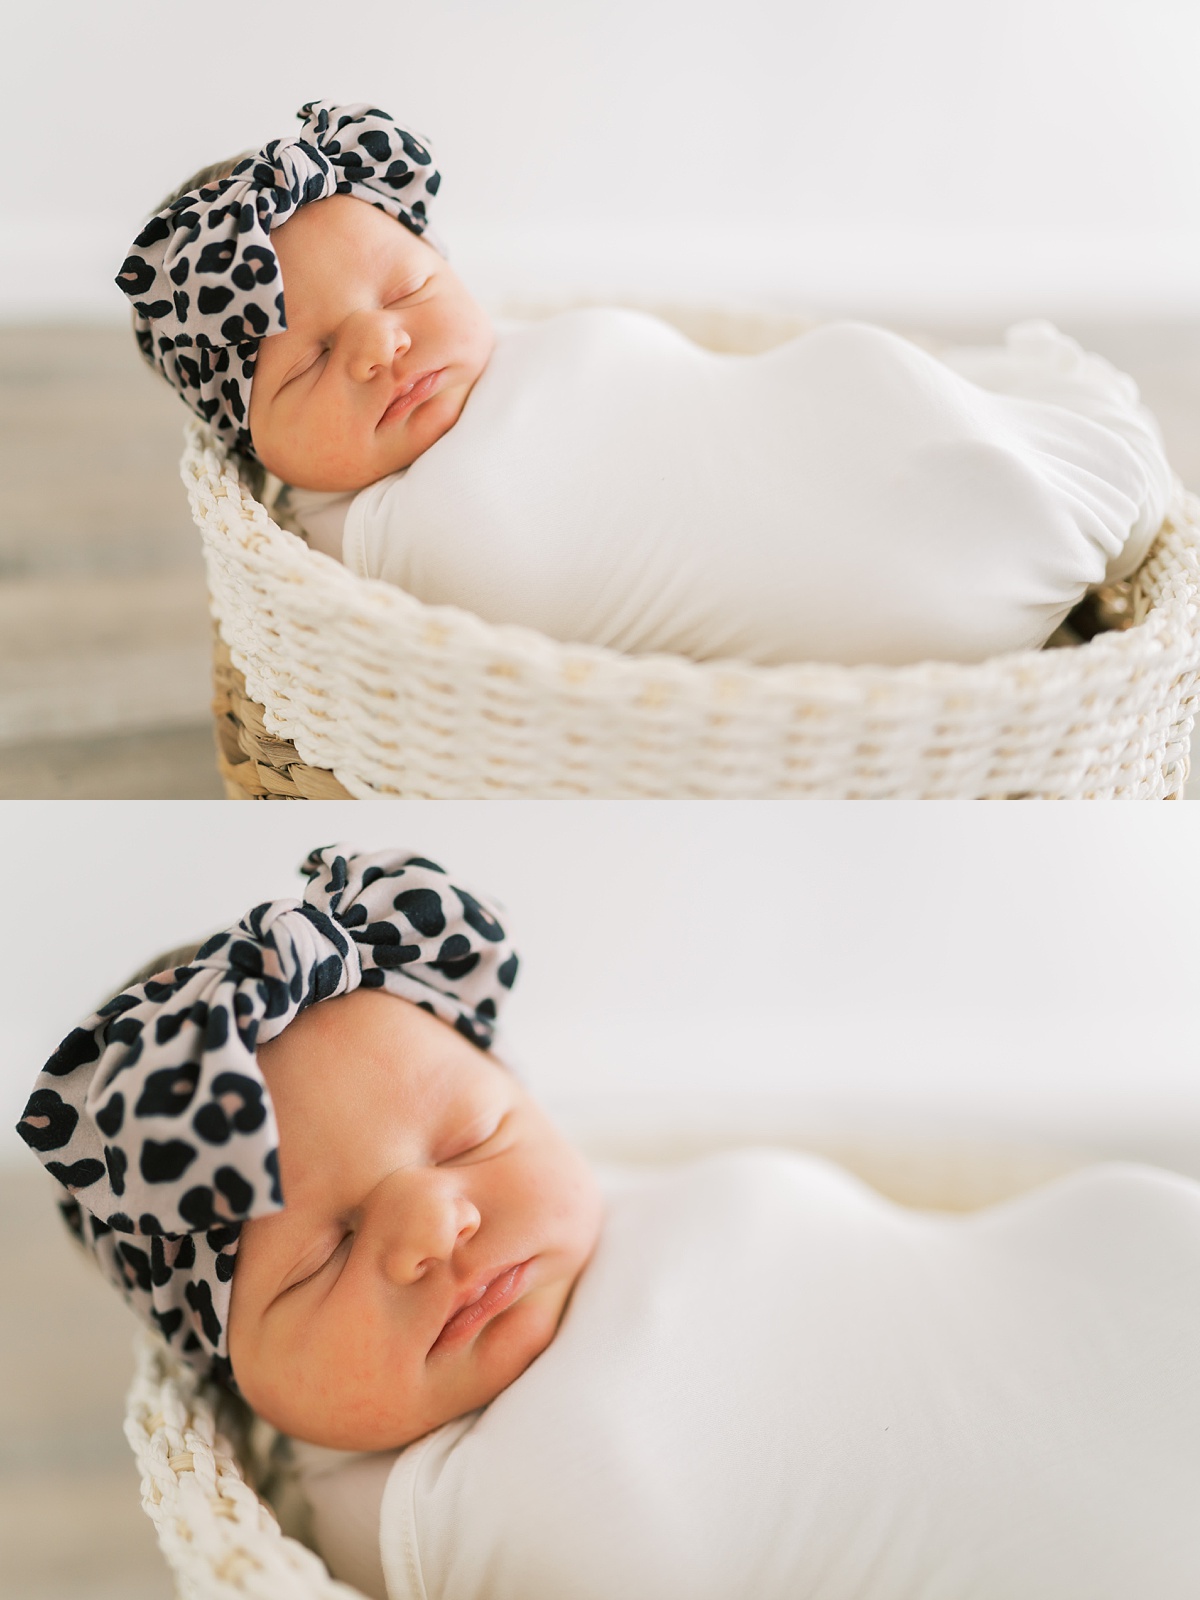 newborn baby in basket